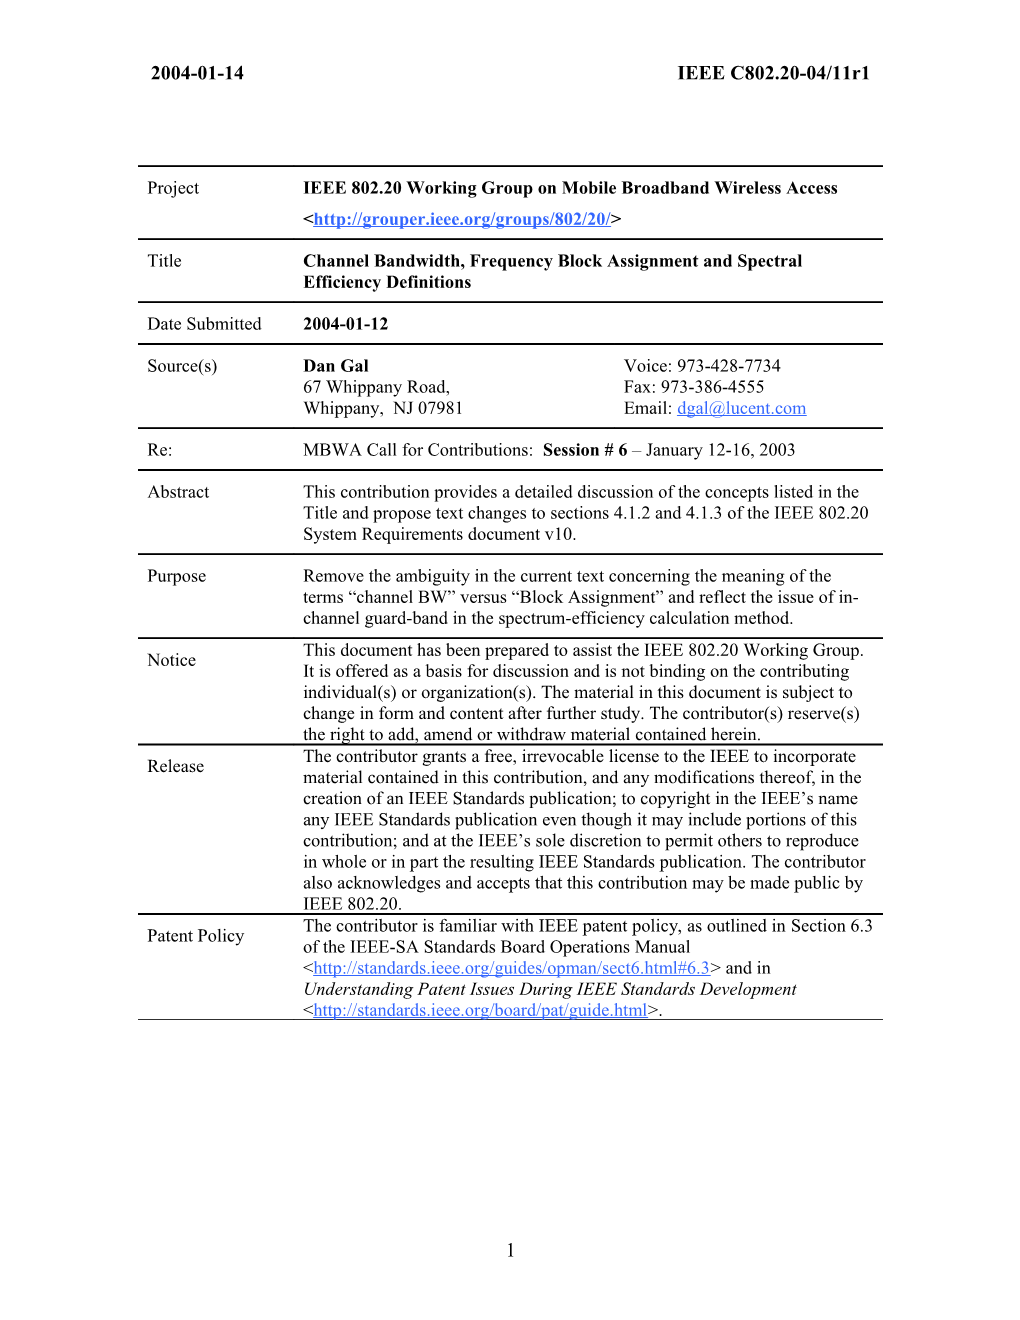 IEEE 802.20 Channel BW - SRD Changes